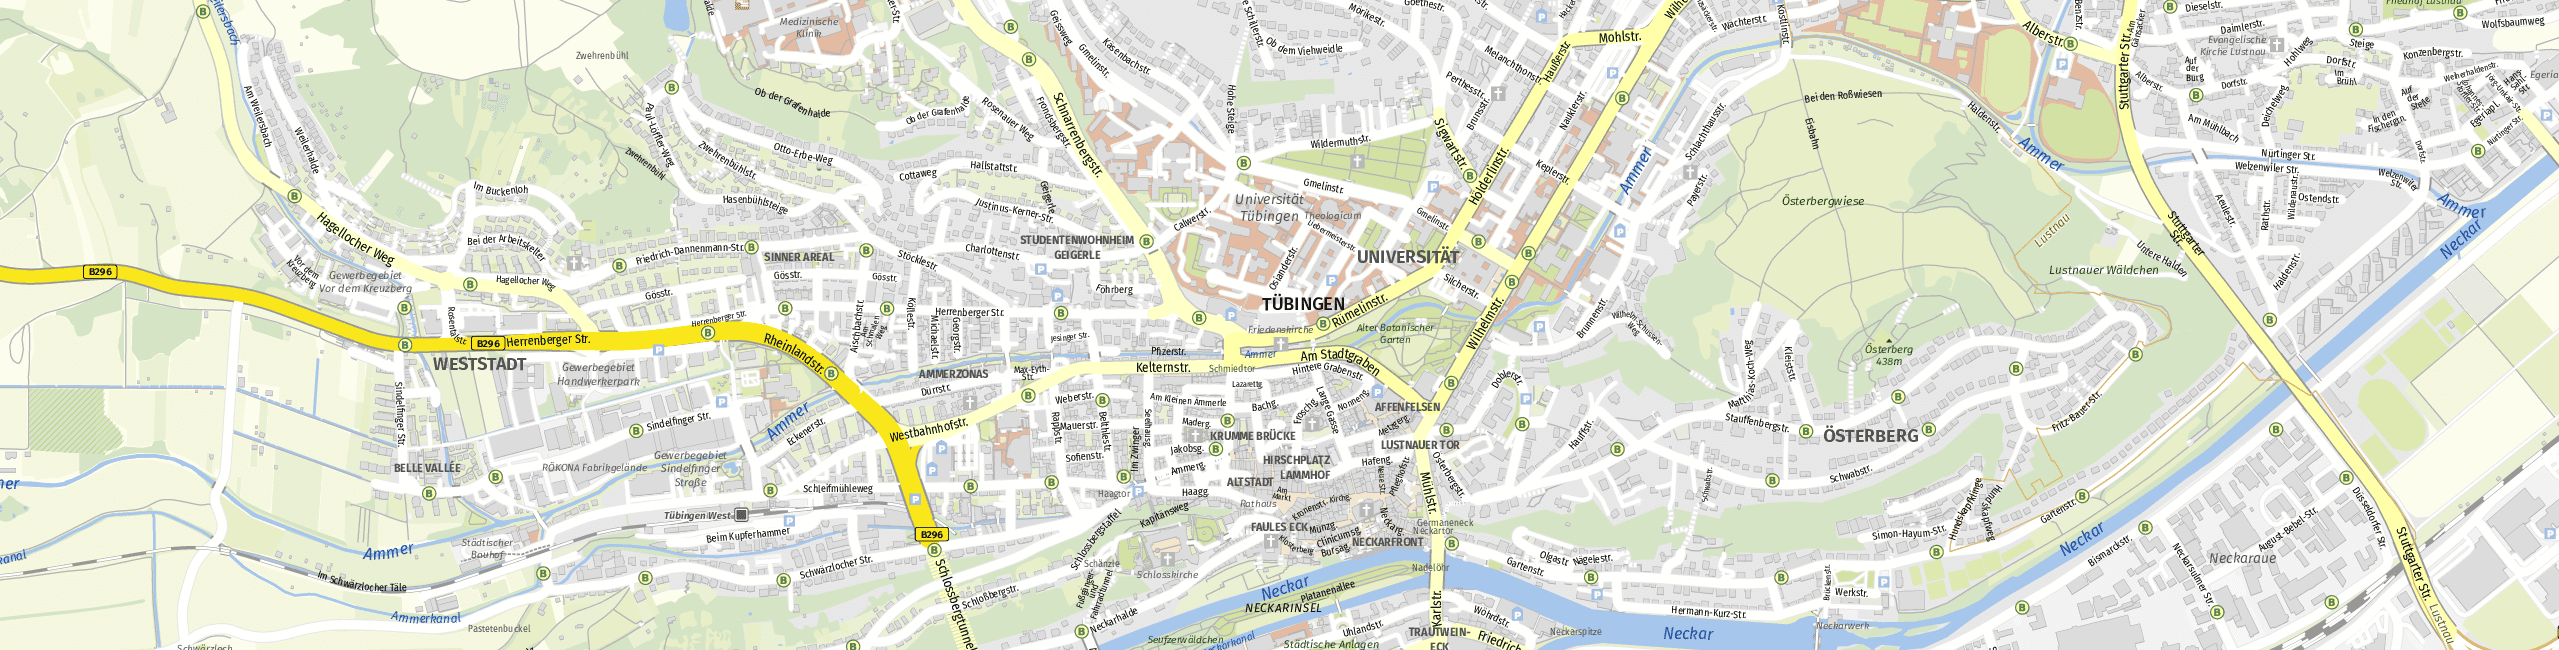 Stadtplan Tübingen zum Downloaden.